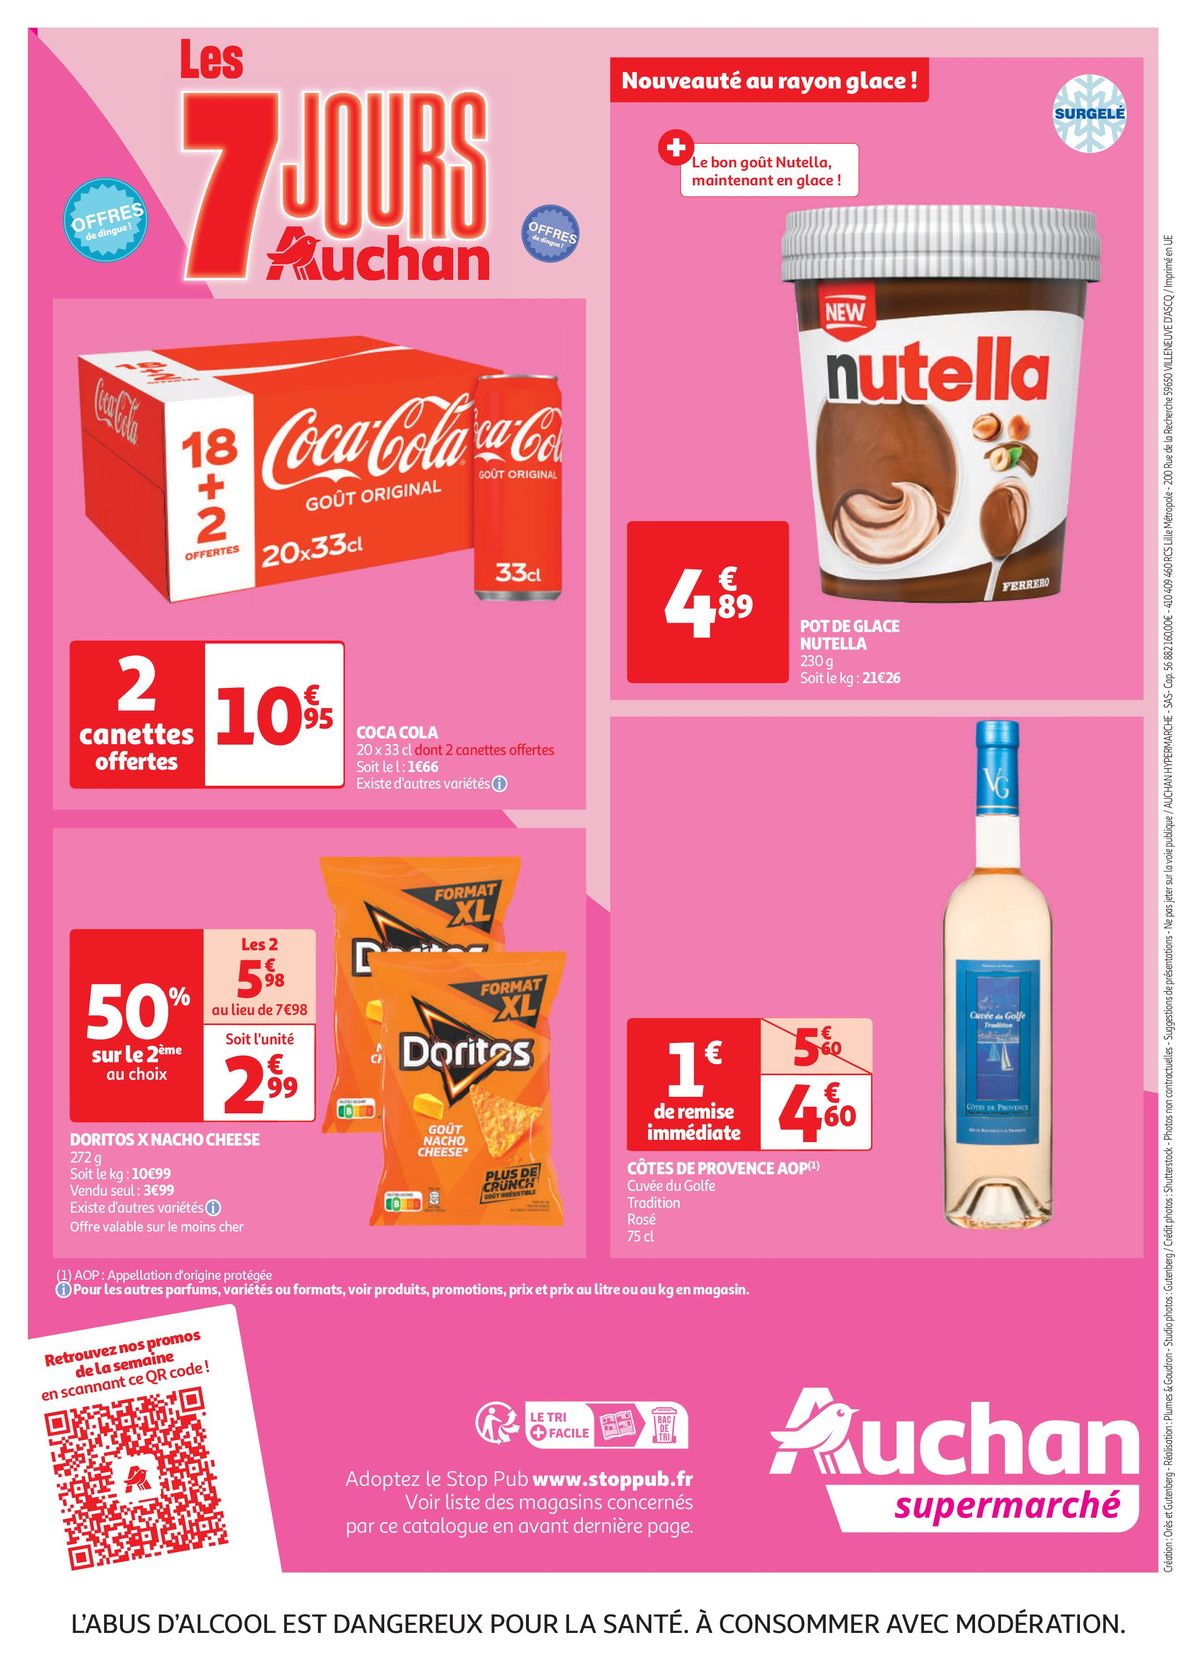 Catalogue Les 7 jours Auchan, c'est maintenant !, page 00036